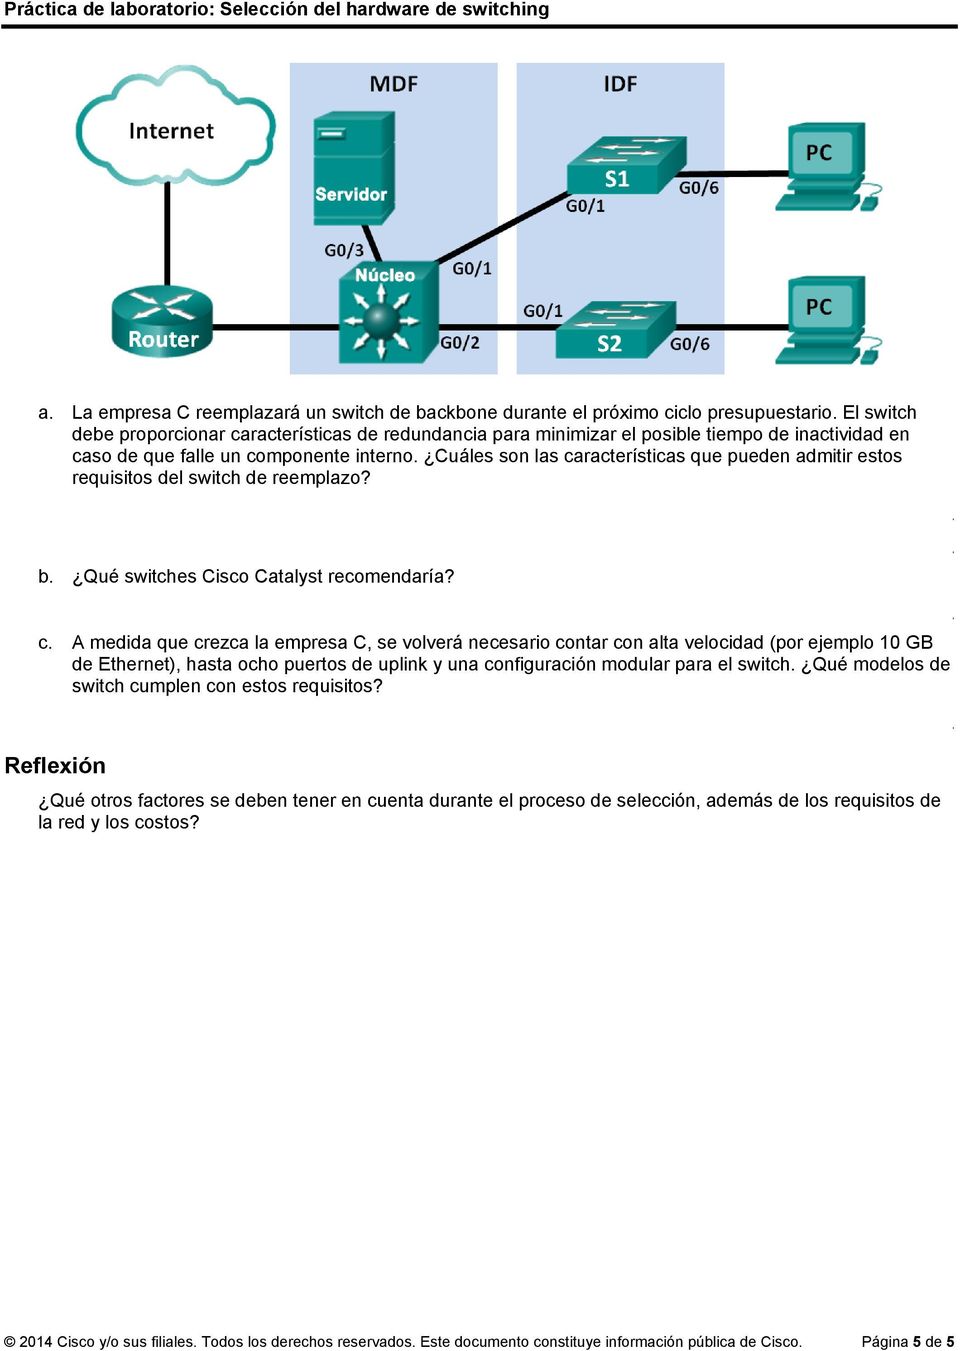 Cuáles son las características que pueden admitir estos requisitos del switch de reemplazo? b. Qué switches Cisco Catalyst recomendaría? c. A medida que crezca la empresa C, se volverá necesario contar con alta velocidad (por ejemplo 10 GB de Ethernet), hasta ocho puertos de y una configuración modular para el switch.